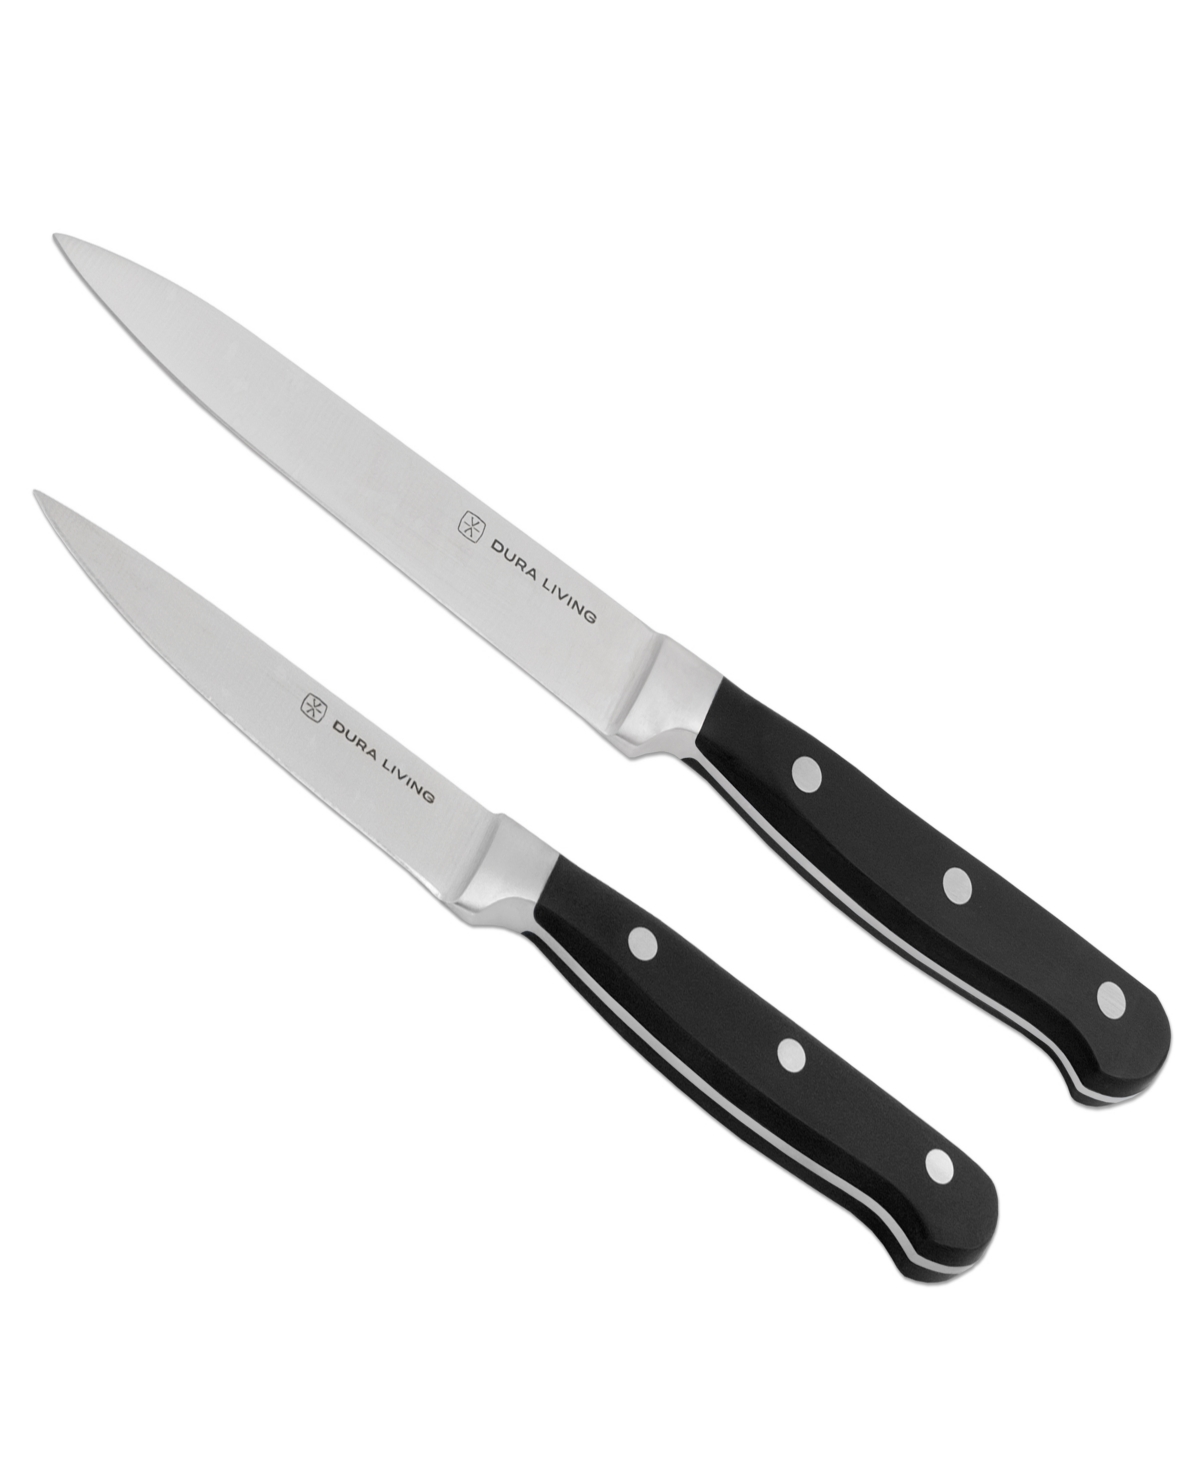 Duraliving 2-piece Knife Set In Black